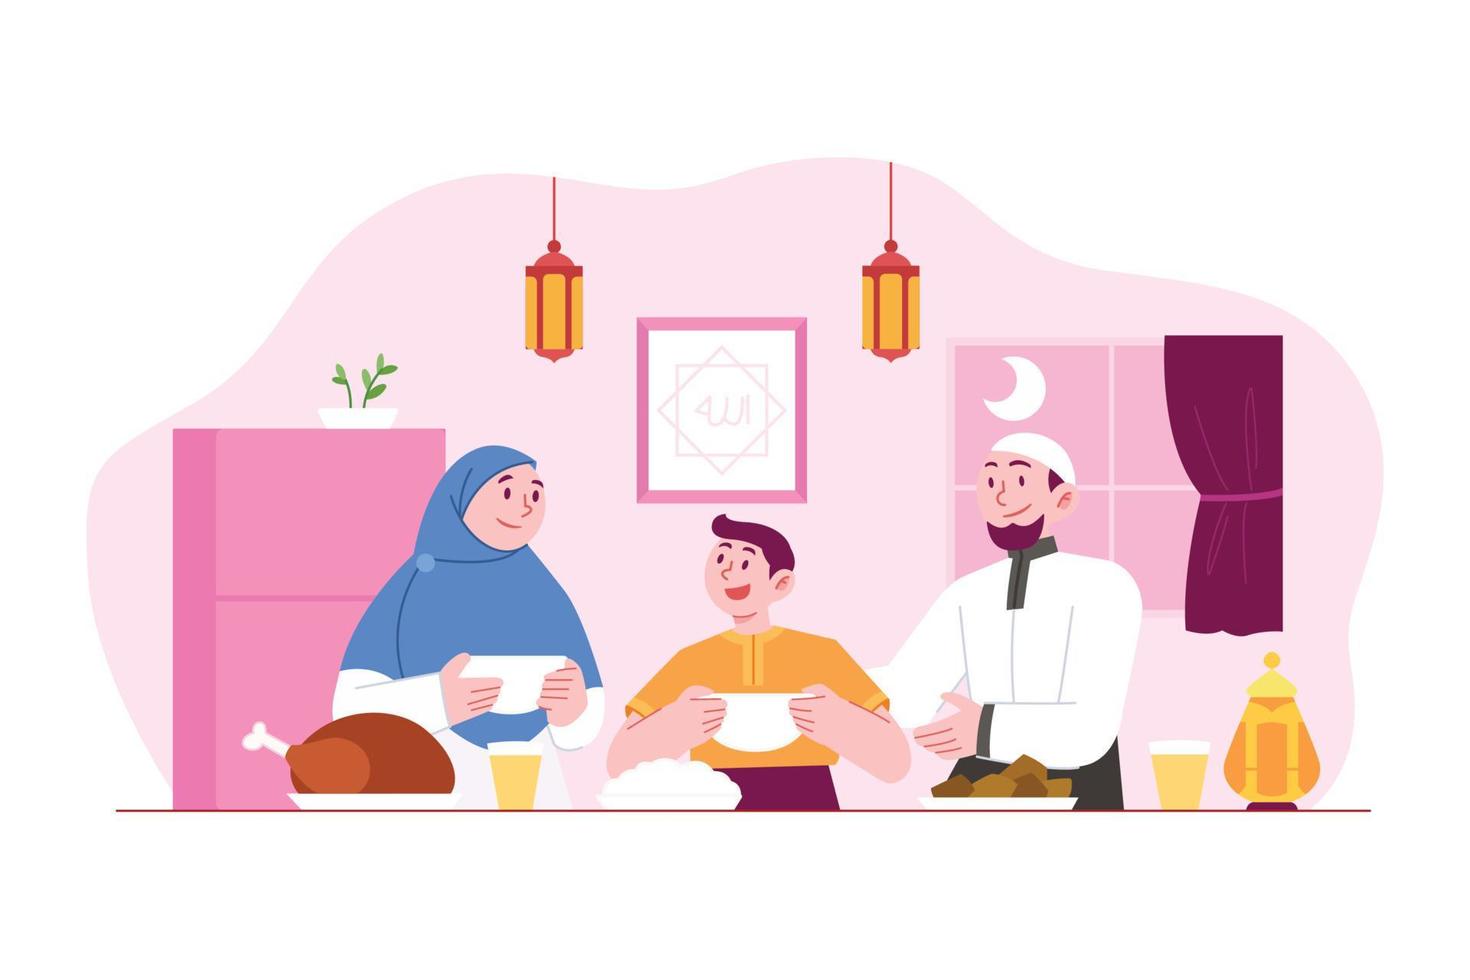 ramadan kareem mubarak concept illustration vectorielle idée de modèle de page de destination, dates de fête du ramadan familial islamique, personnes priant avant le petit déjeuner pour le mois sacré, style plat dessiné à la main vecteur